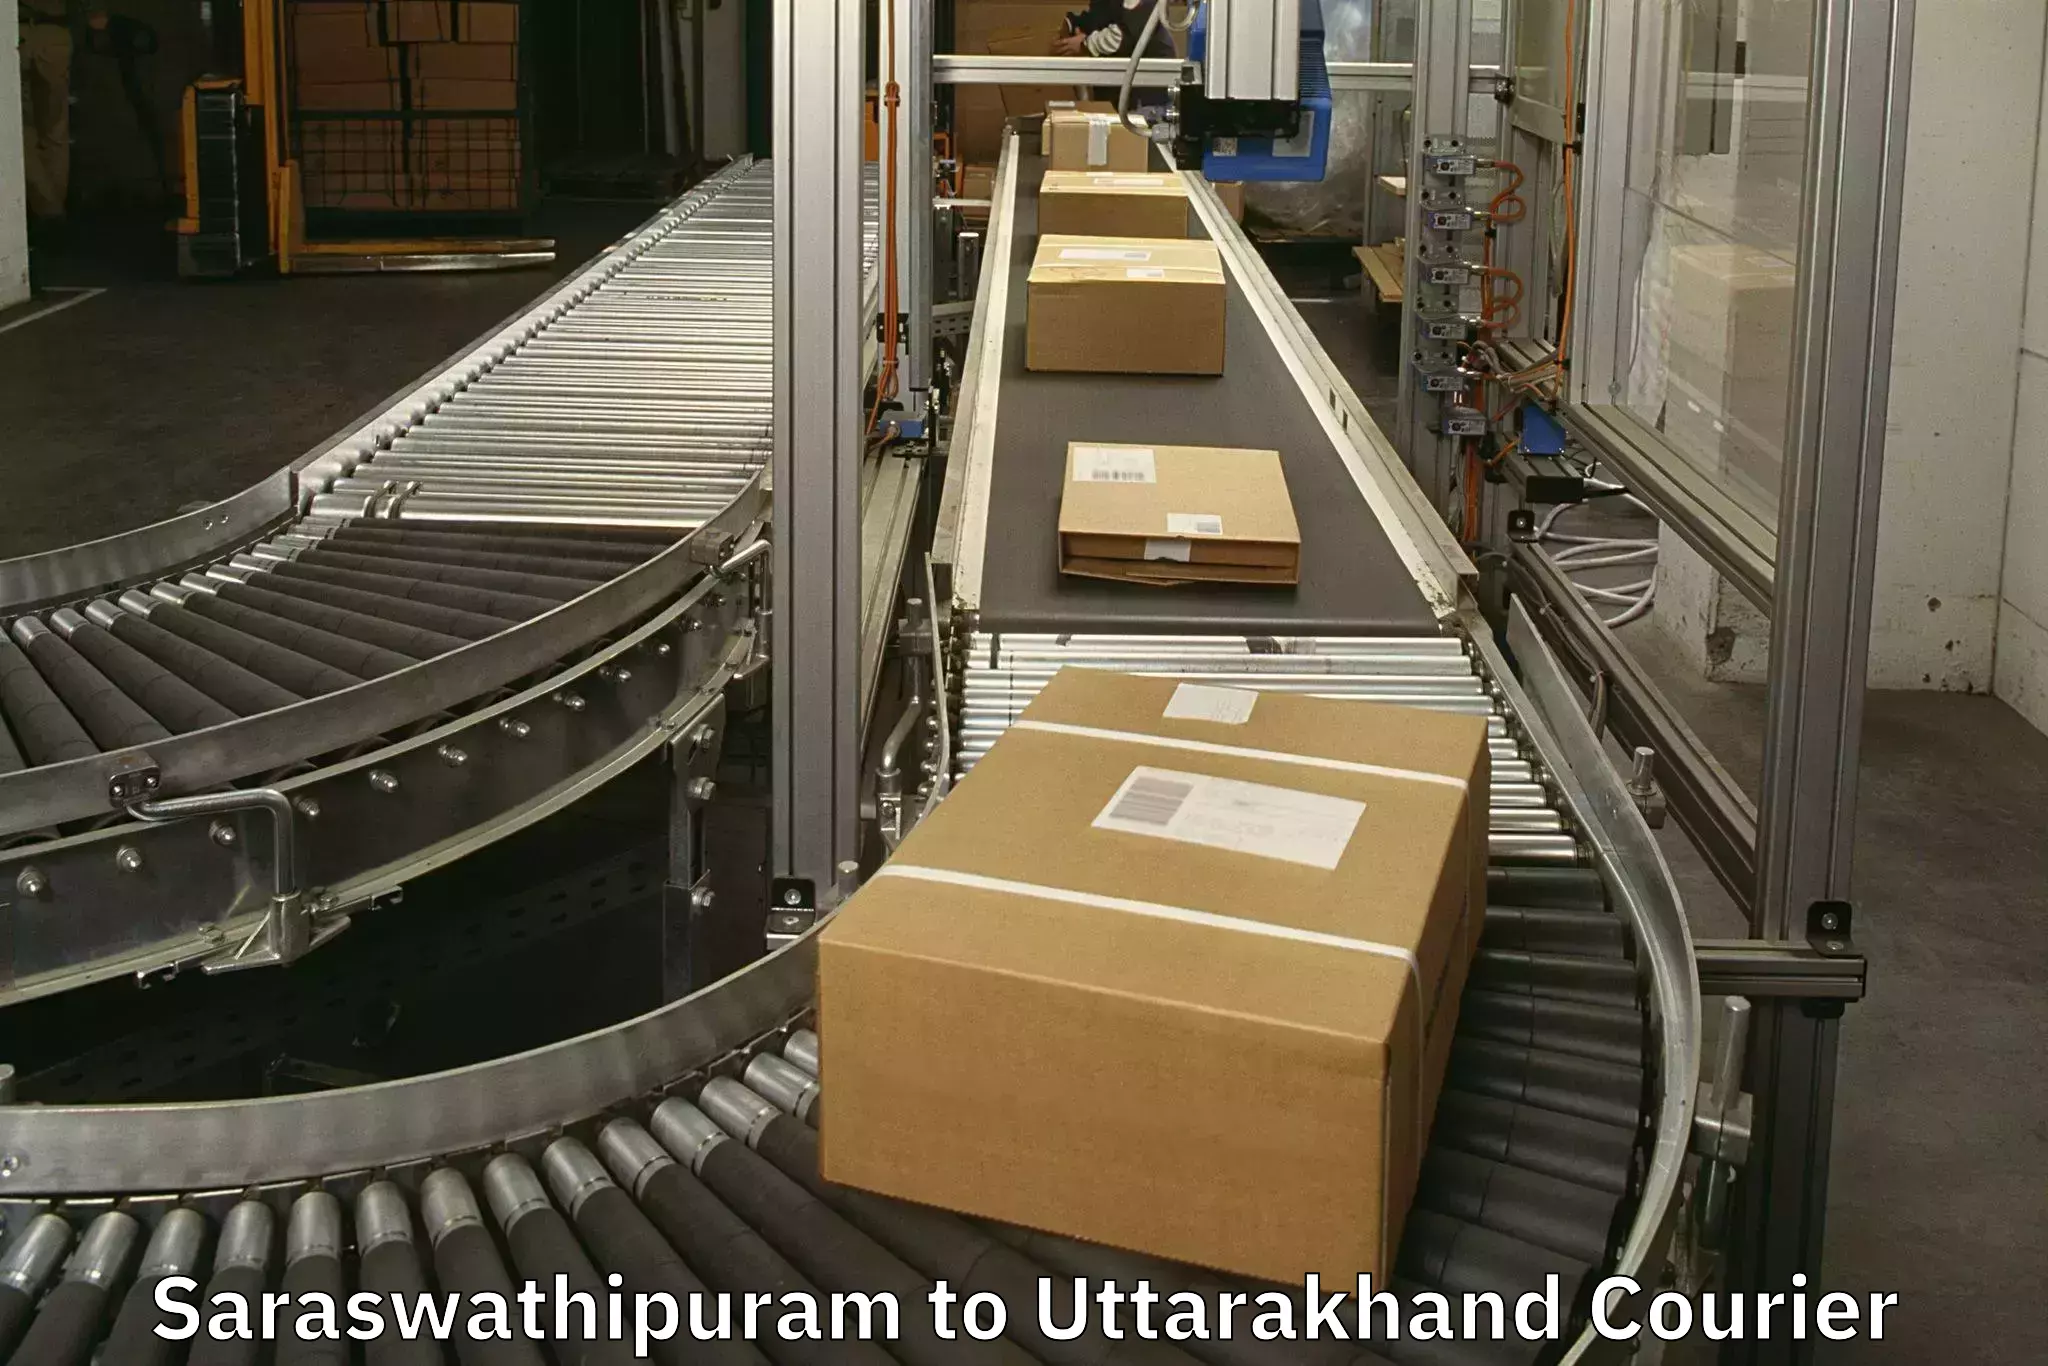 Luggage transport company Saraswathipuram to Dwarahat